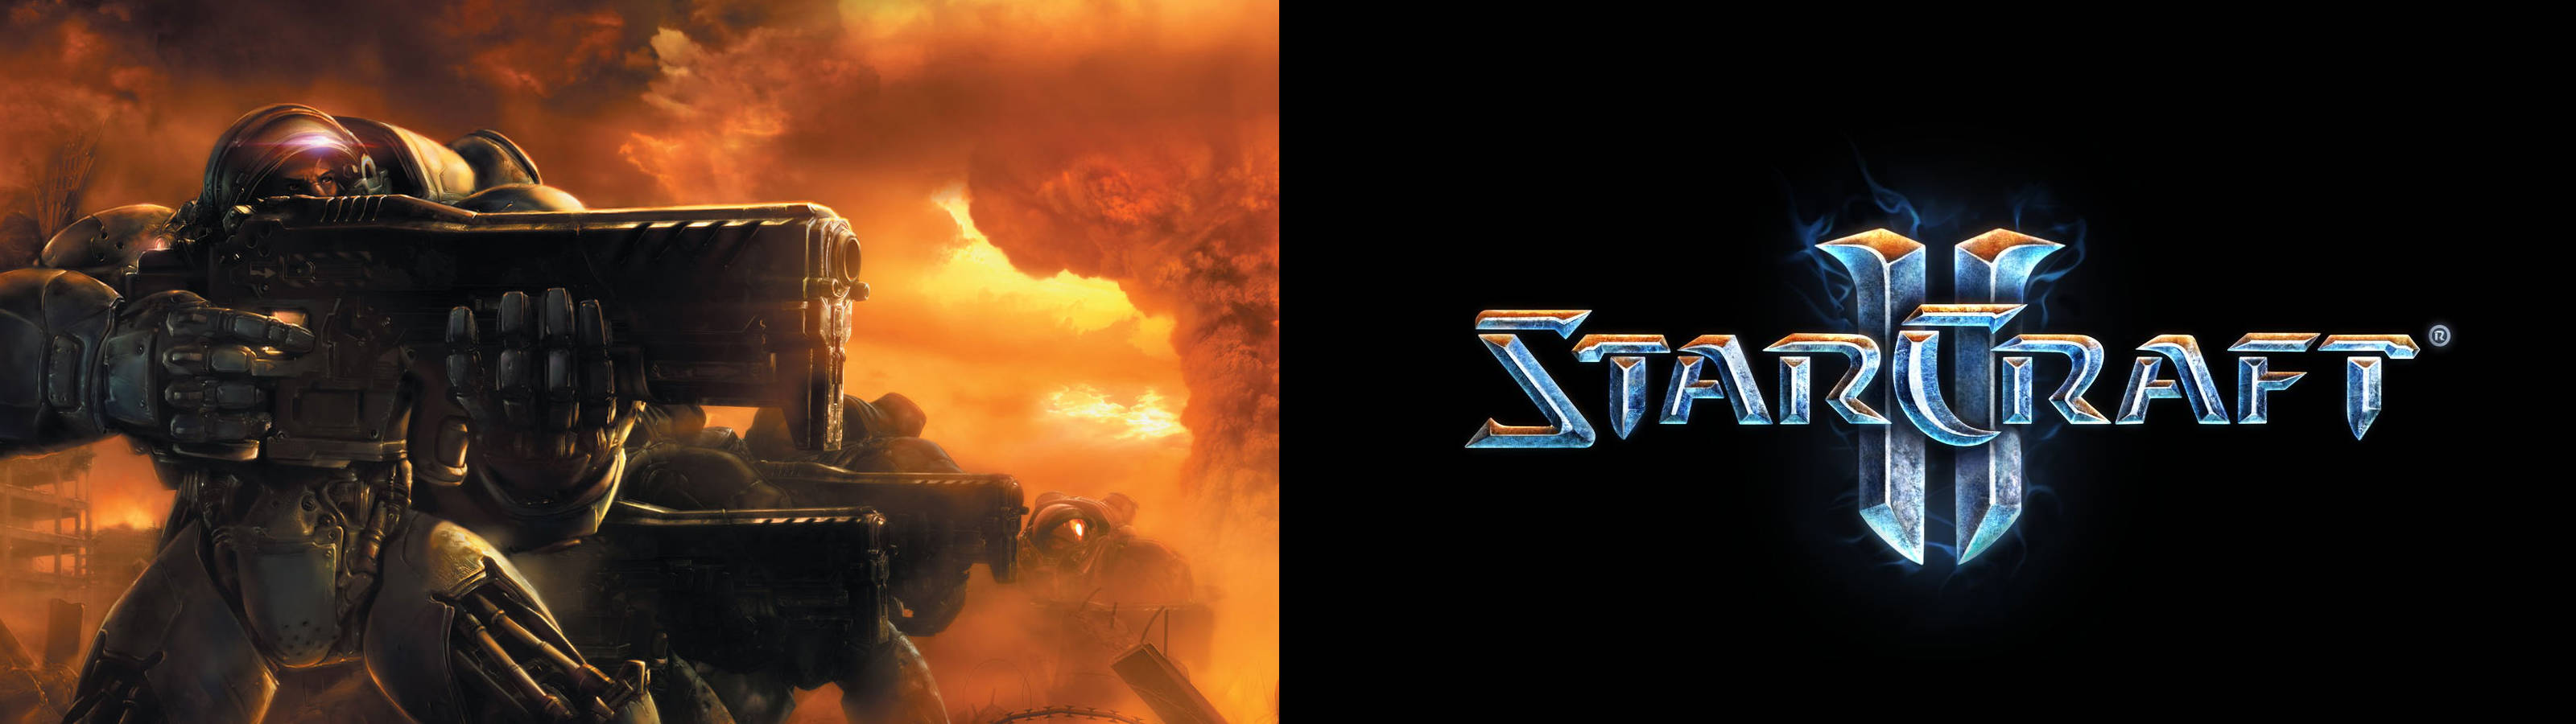 Starcraft 2 Fiery Poster Wallpaper